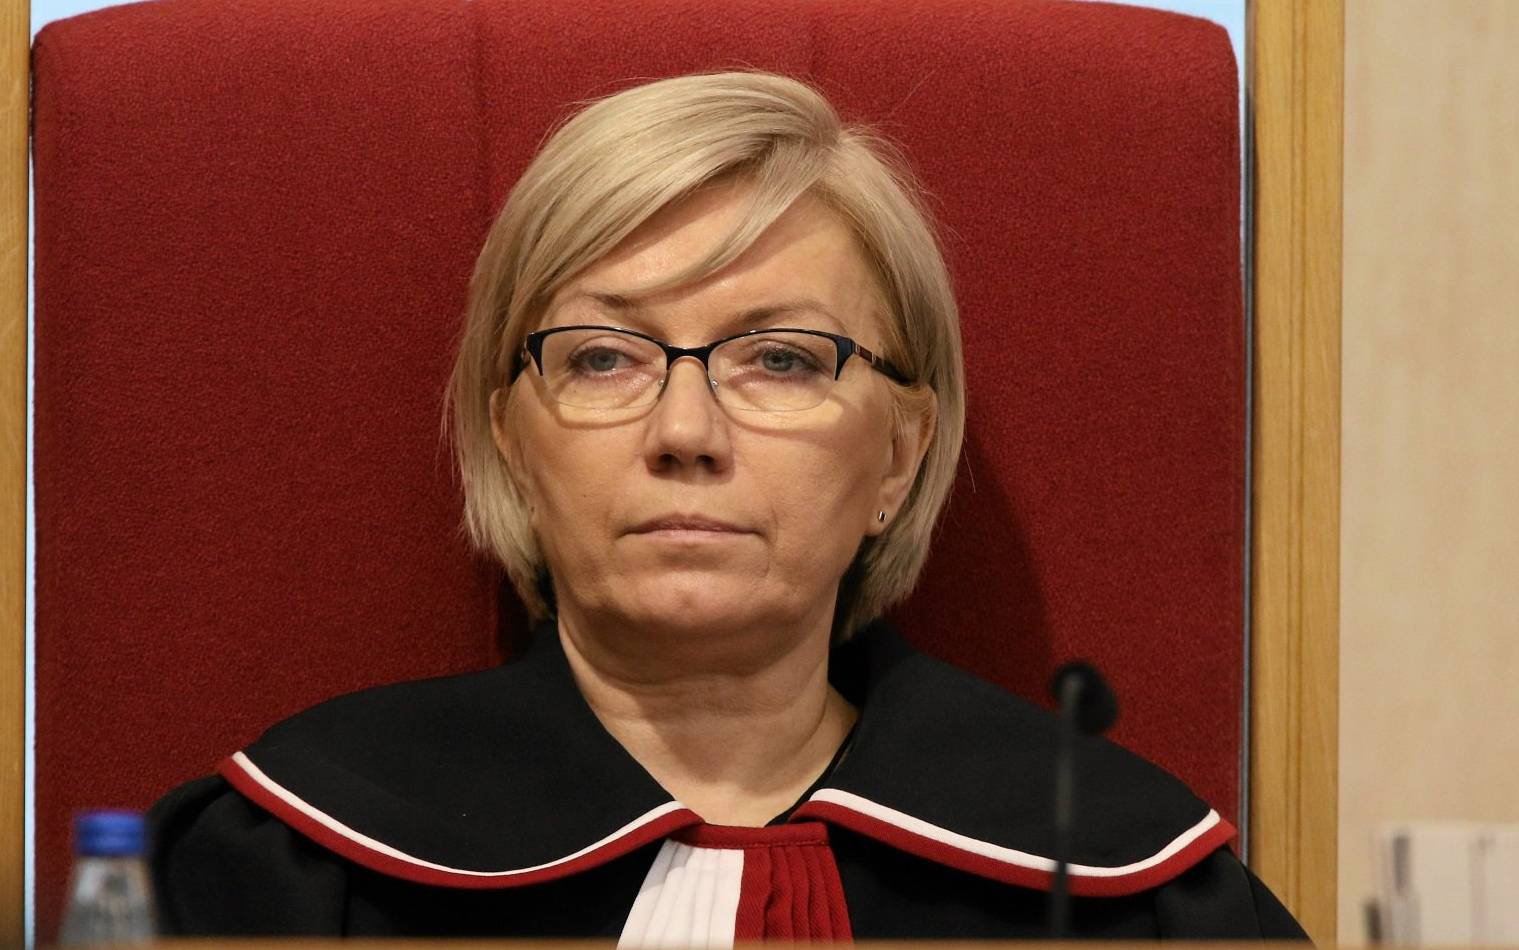 Julia Przyłębska, blondynka z włosami średniej długości, w okularach i w todze sędziowskiej siedzi w czerwonym fotelu